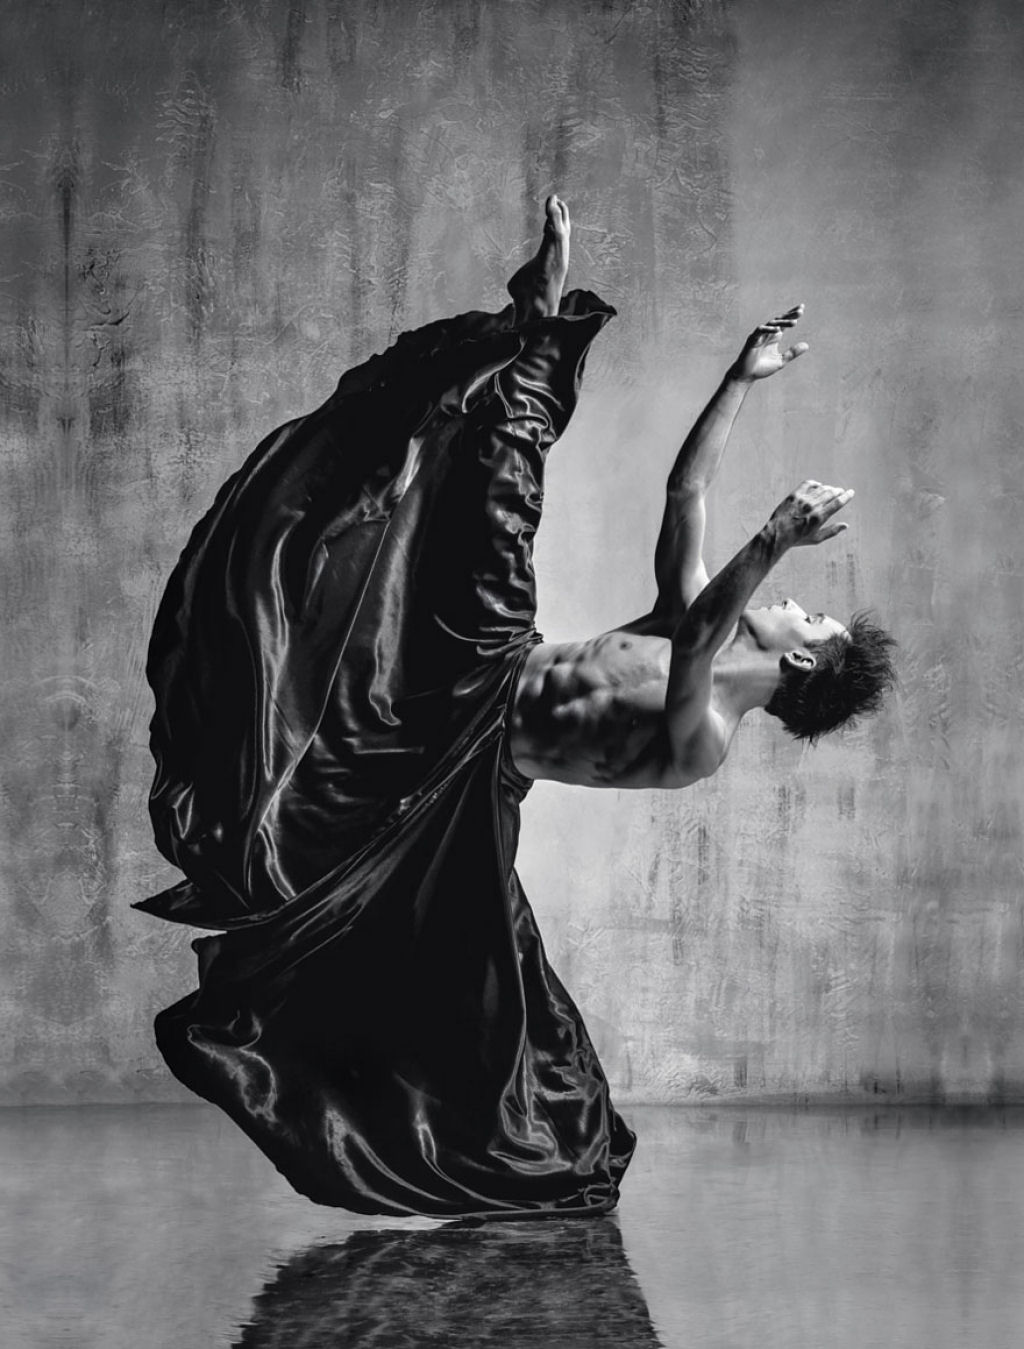 Explosivos retratos de dana revelam os poderosos movimentos de elegantes bailarinos 04